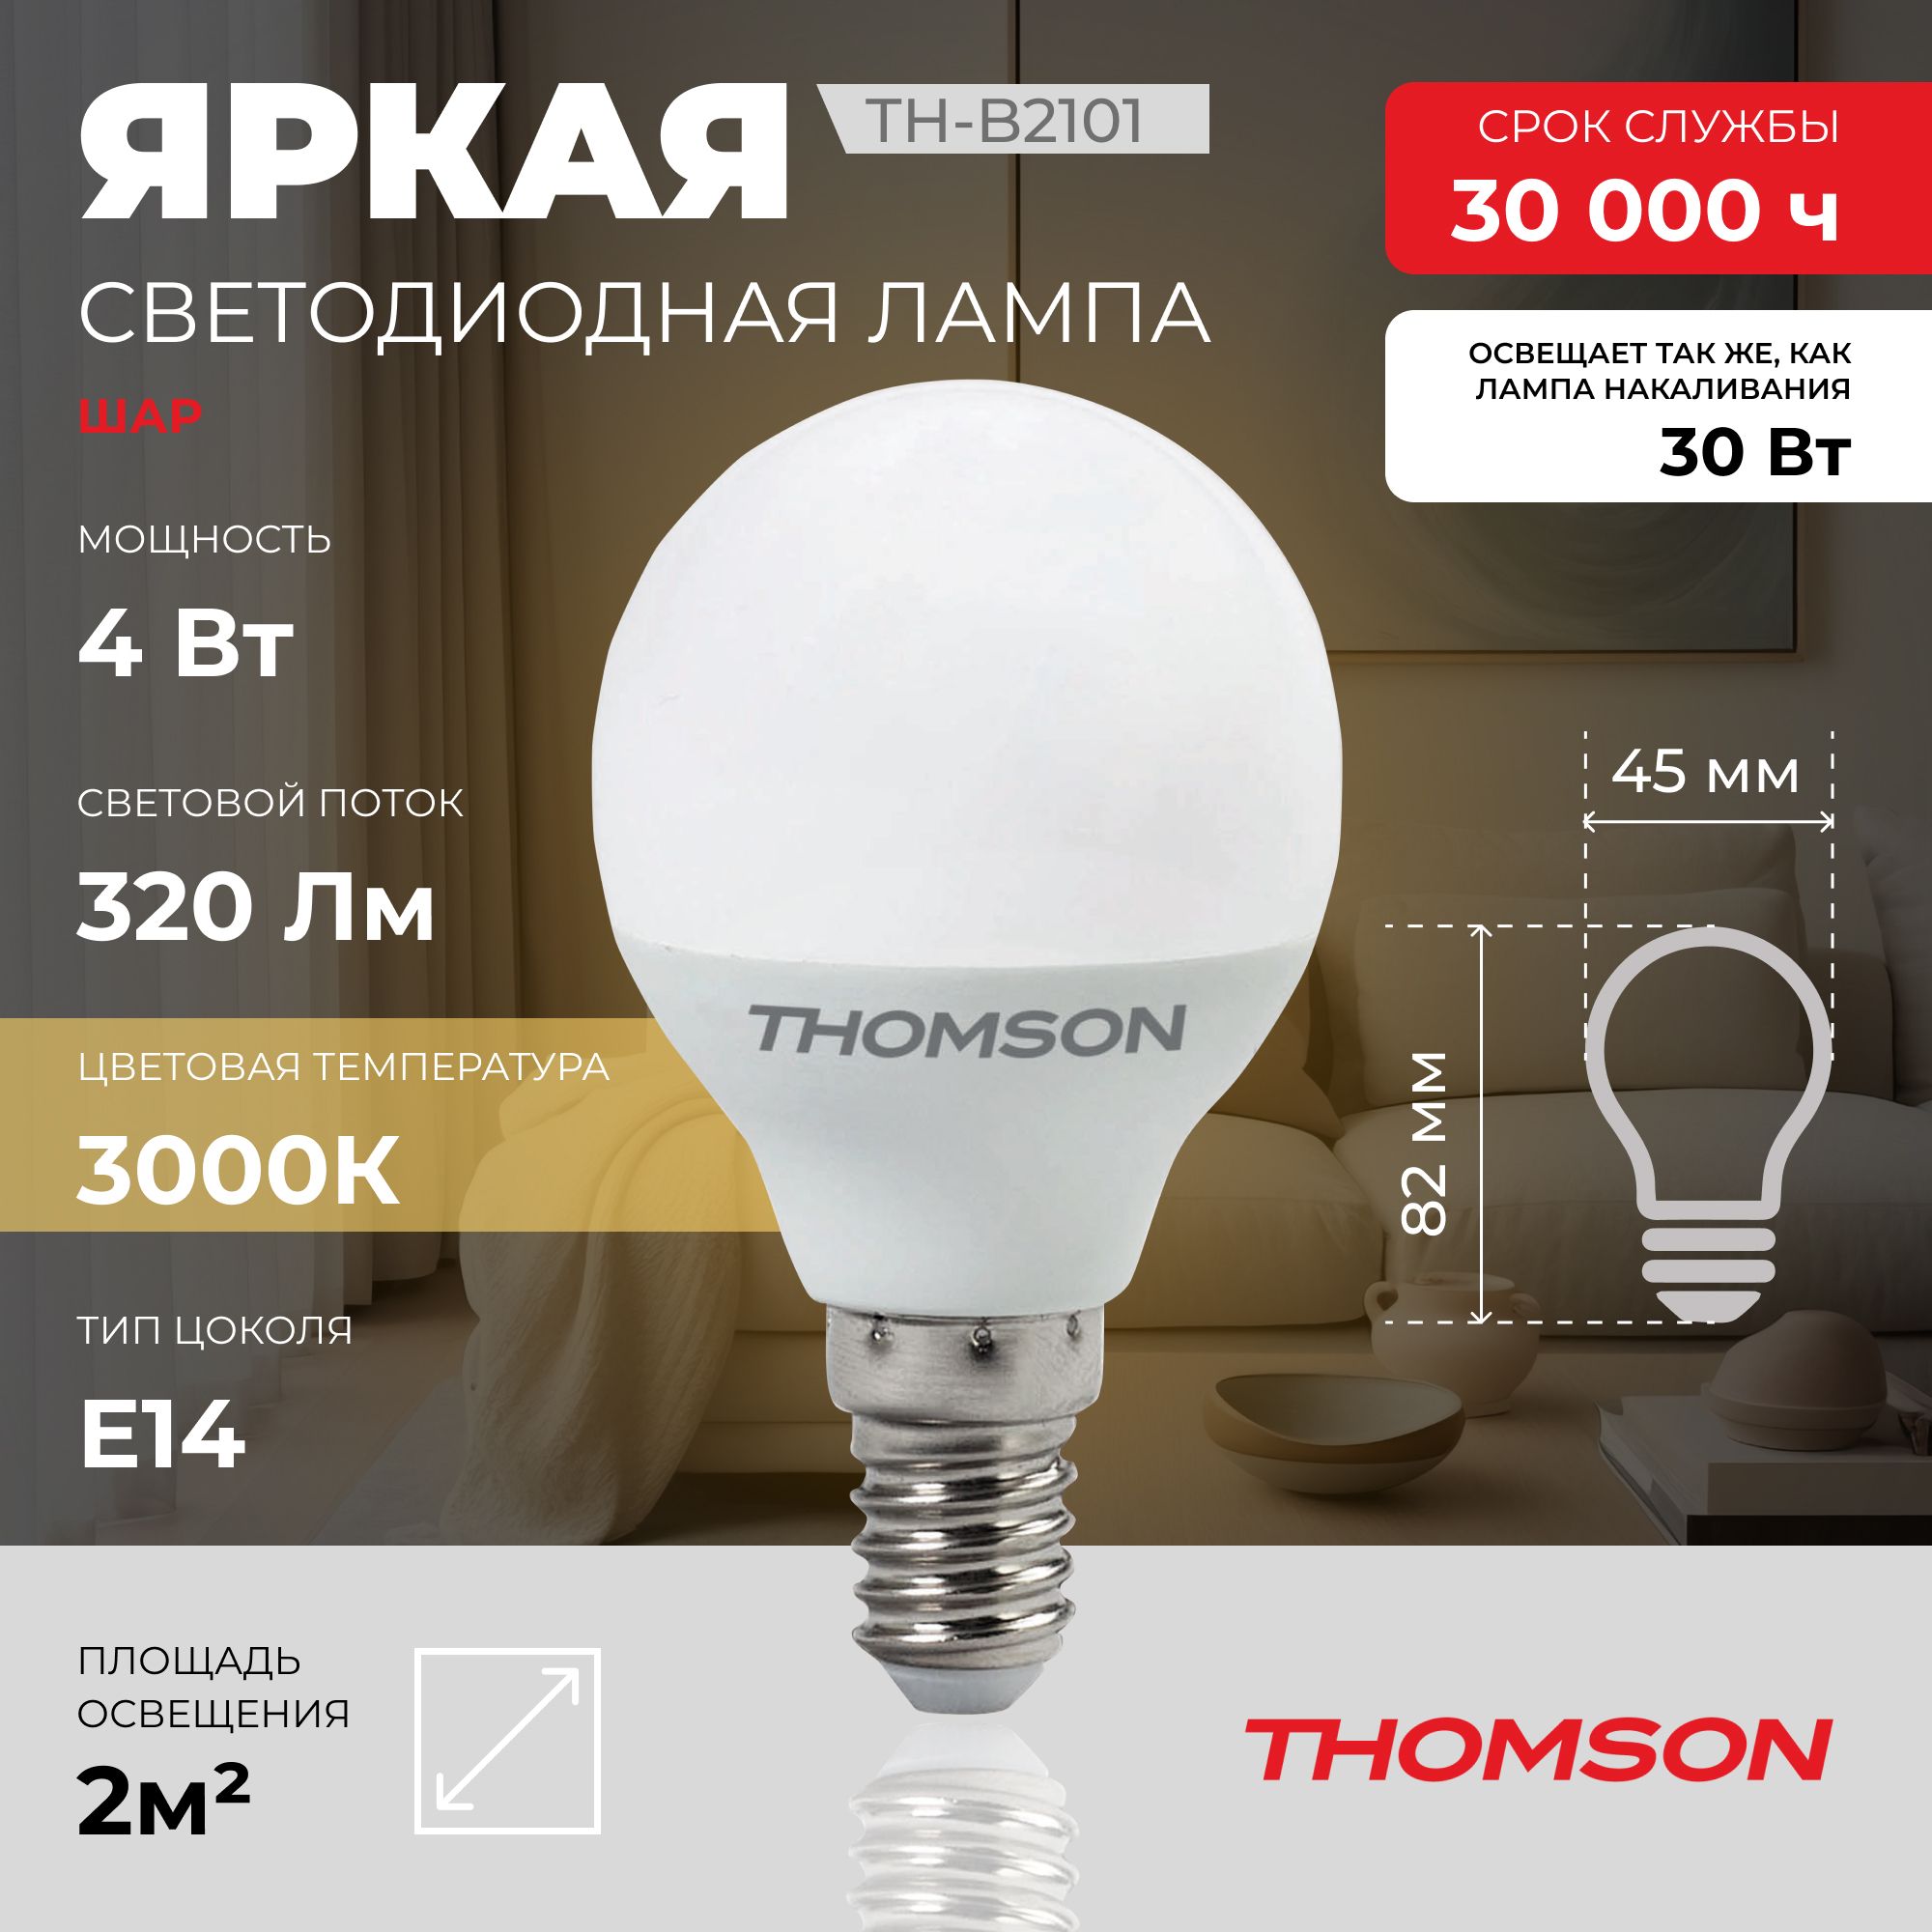 Лампочка светодиодная THOMSON TH-B2101 4 Вт, E14, шар, 3000K теплый белый свет